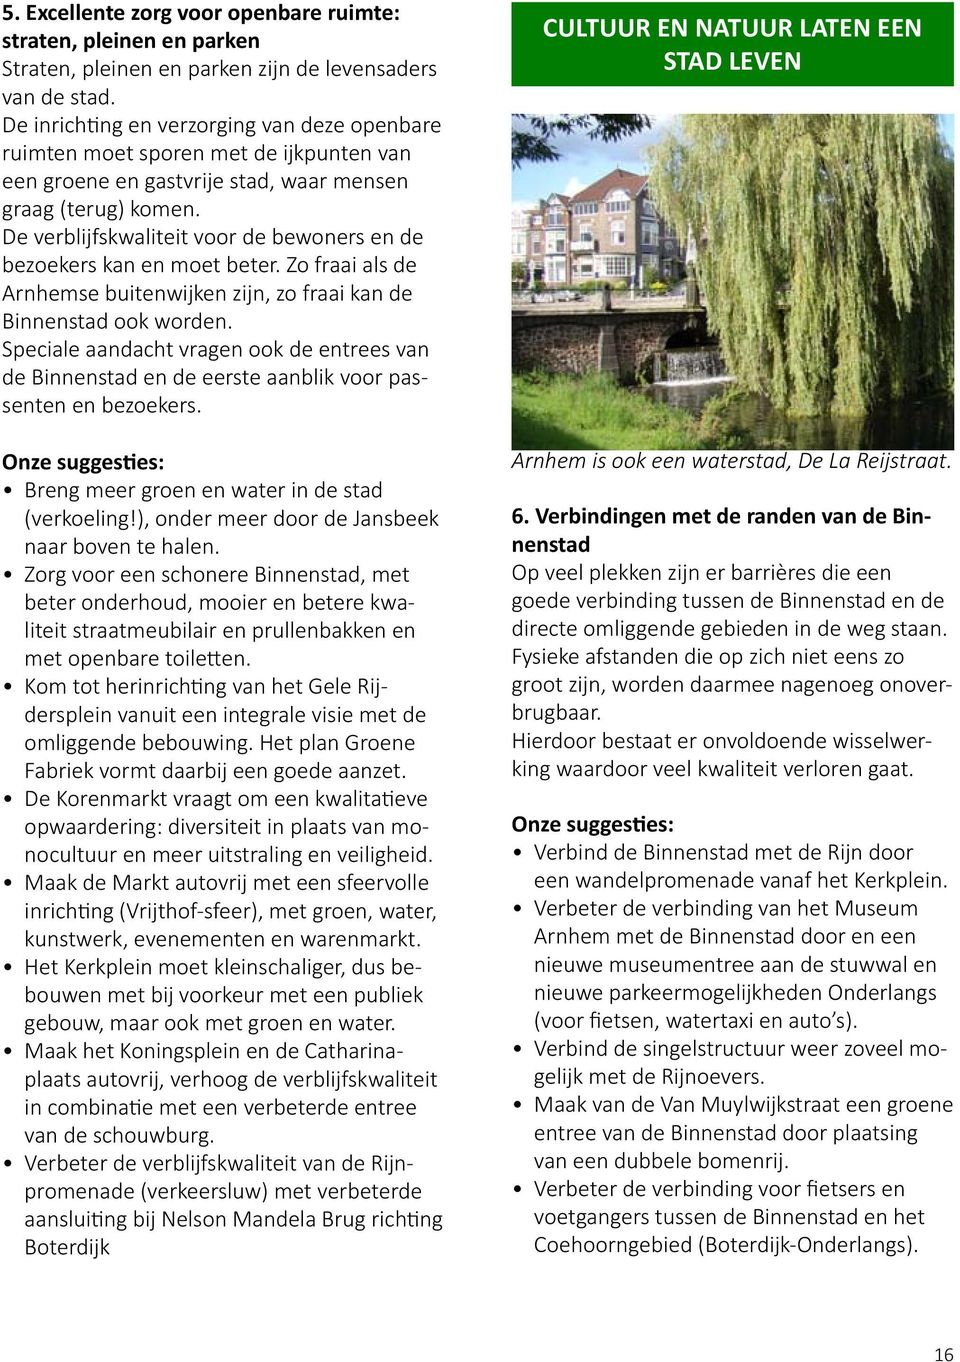 De verblijfskwaliteit voor de bewoners en de bezoekers kan en moet beter. Zo fraai als de Arnhemse buitenwijken zijn, zo fraai kan de Binnenstad ook worden.